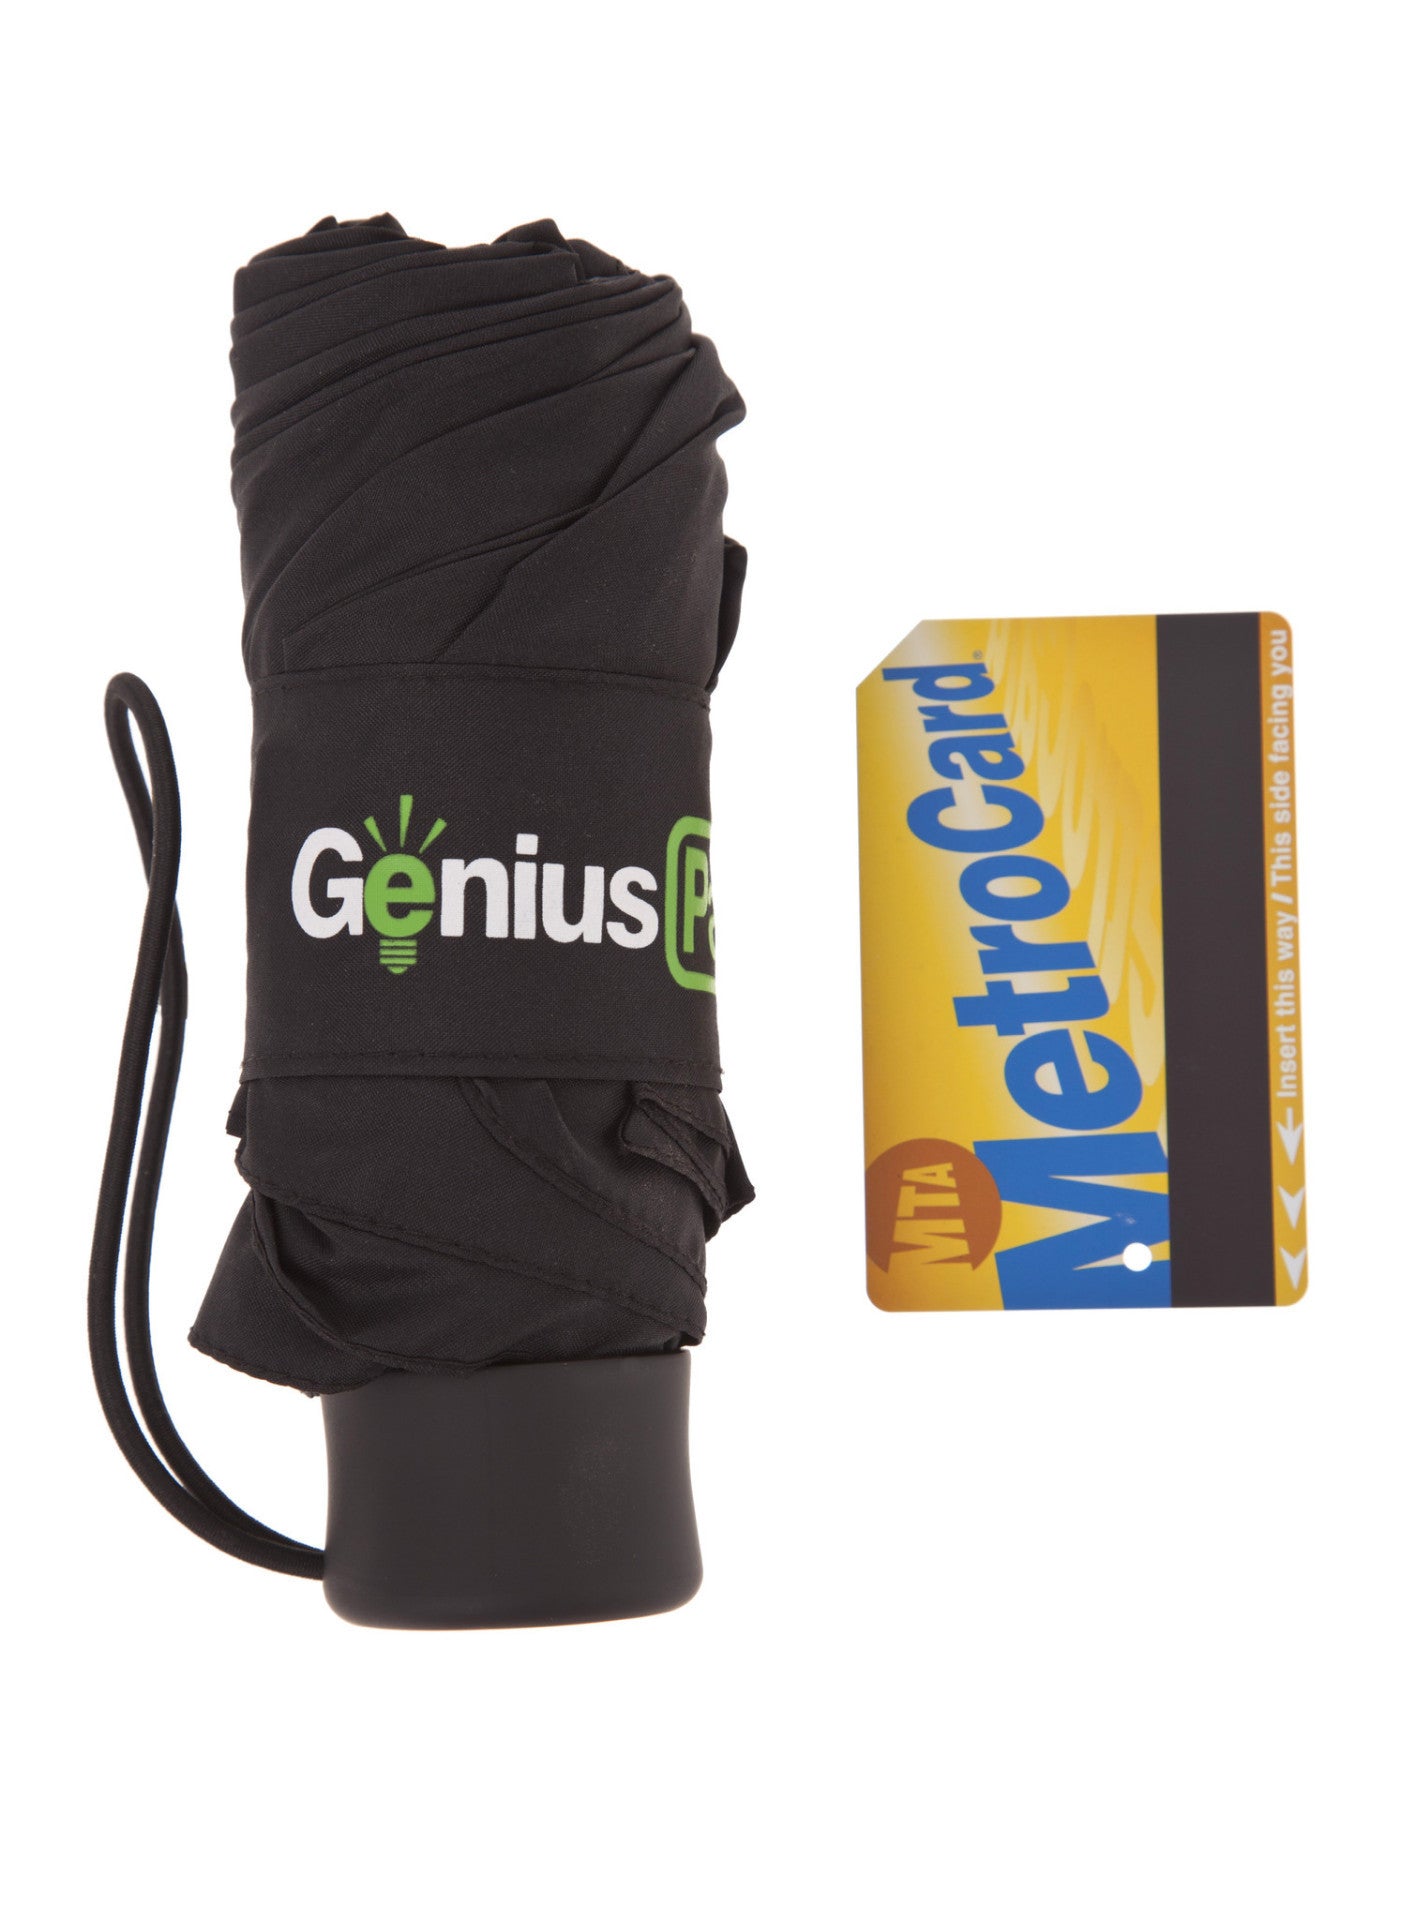 genius pack micro umbrella